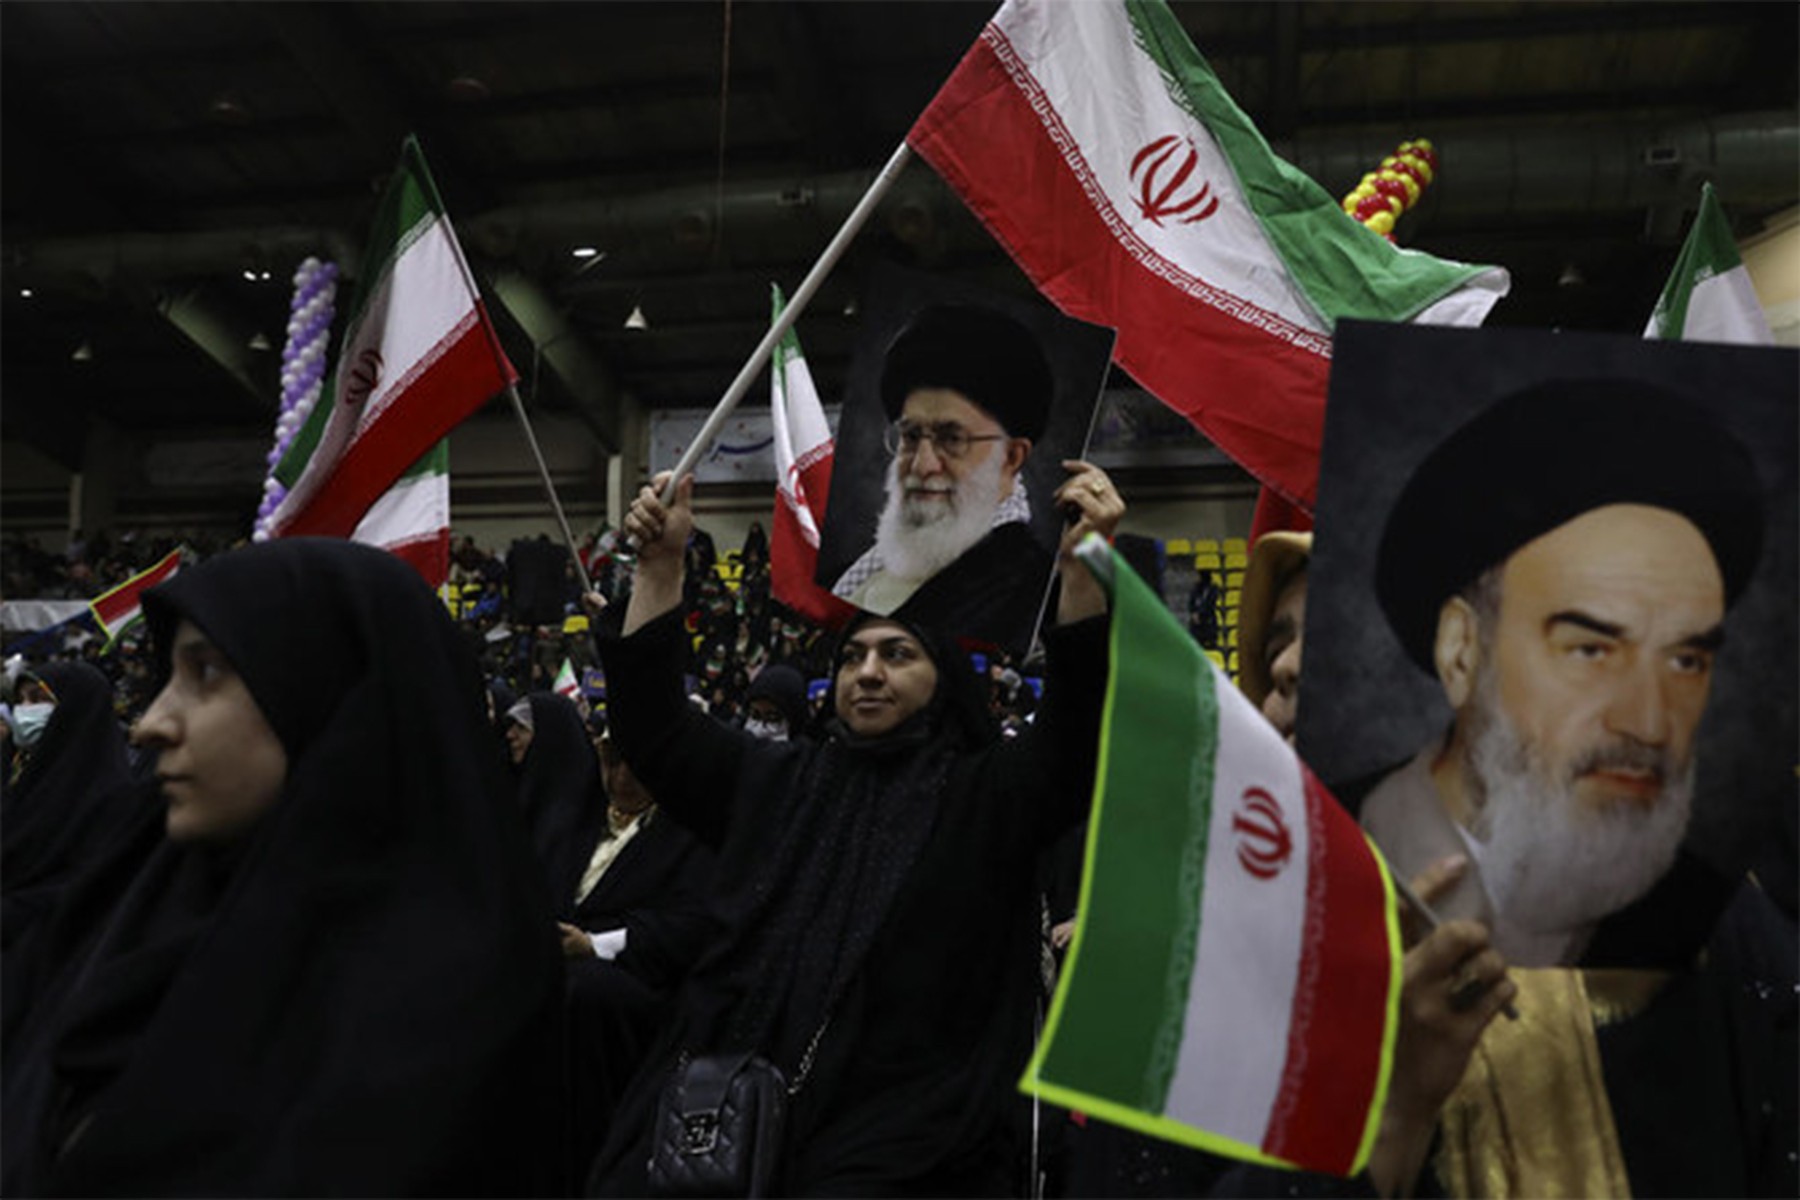 فرانس24: انتظار می رود که تندروهای جمهوری اسلامی در رای گیری، قدرت خود را بیشتر کنند